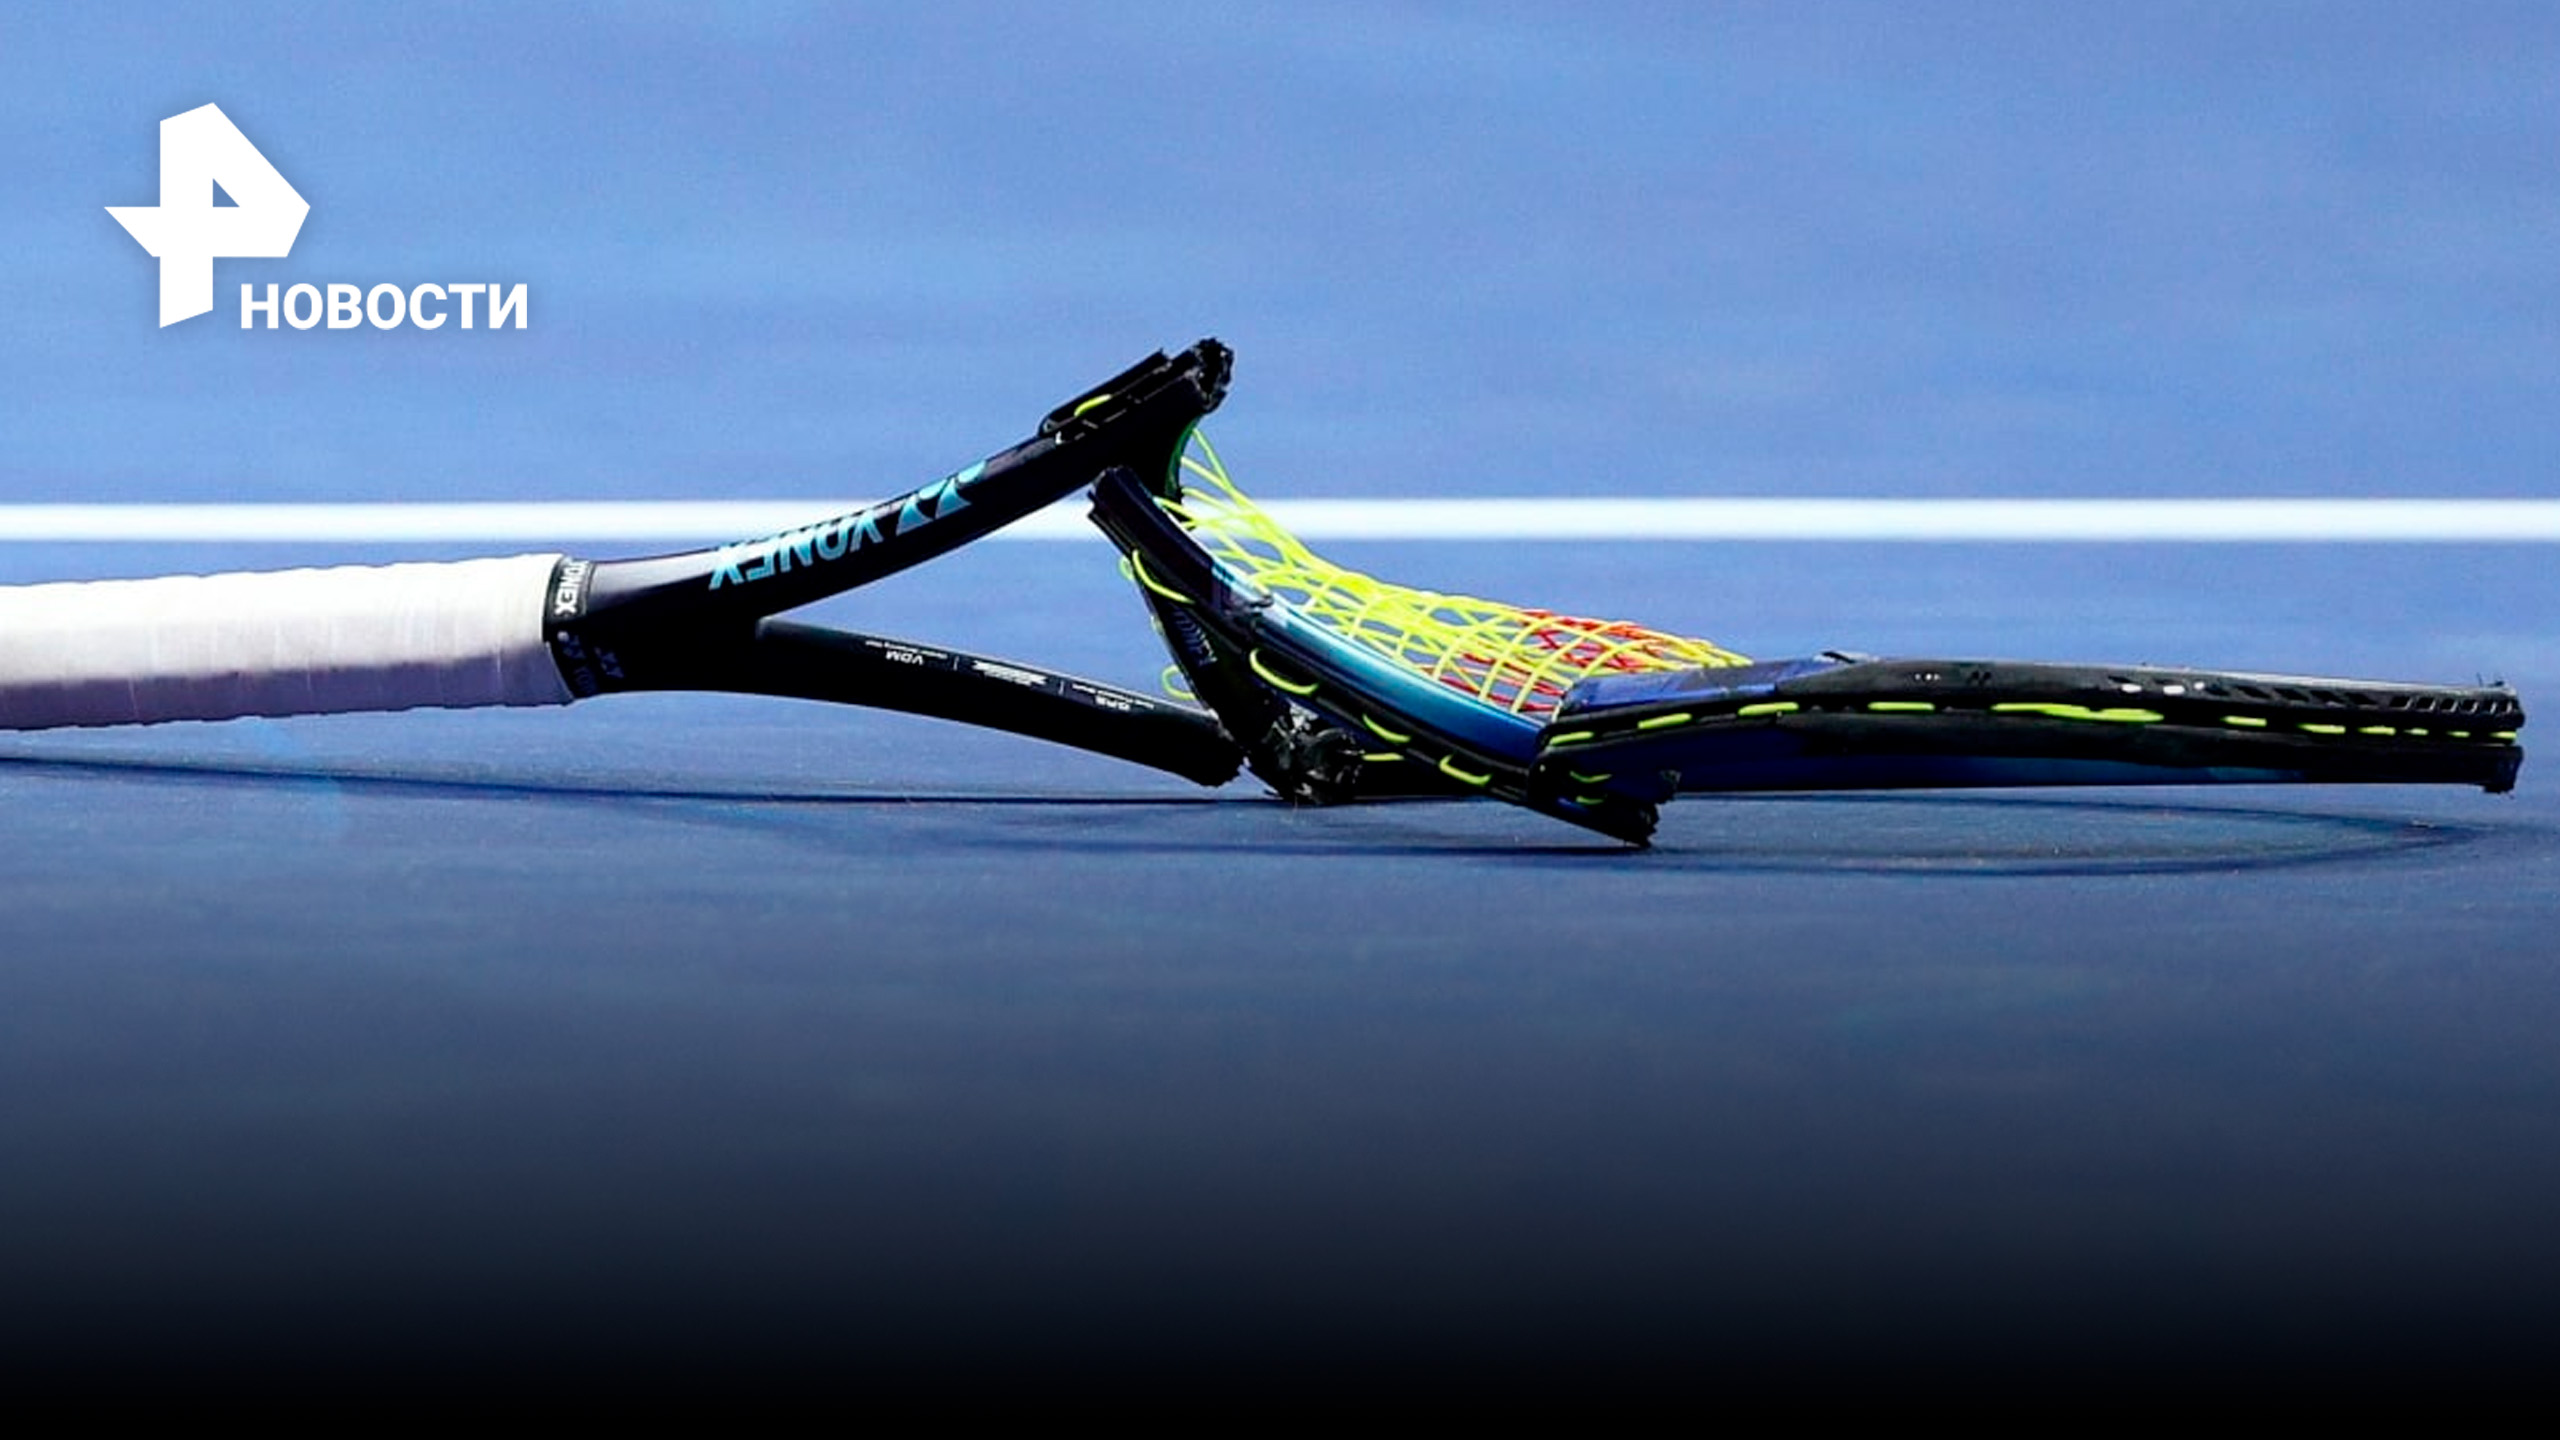 Австралийский теннисист сломал две ракетки после поражения / РЕН Новости